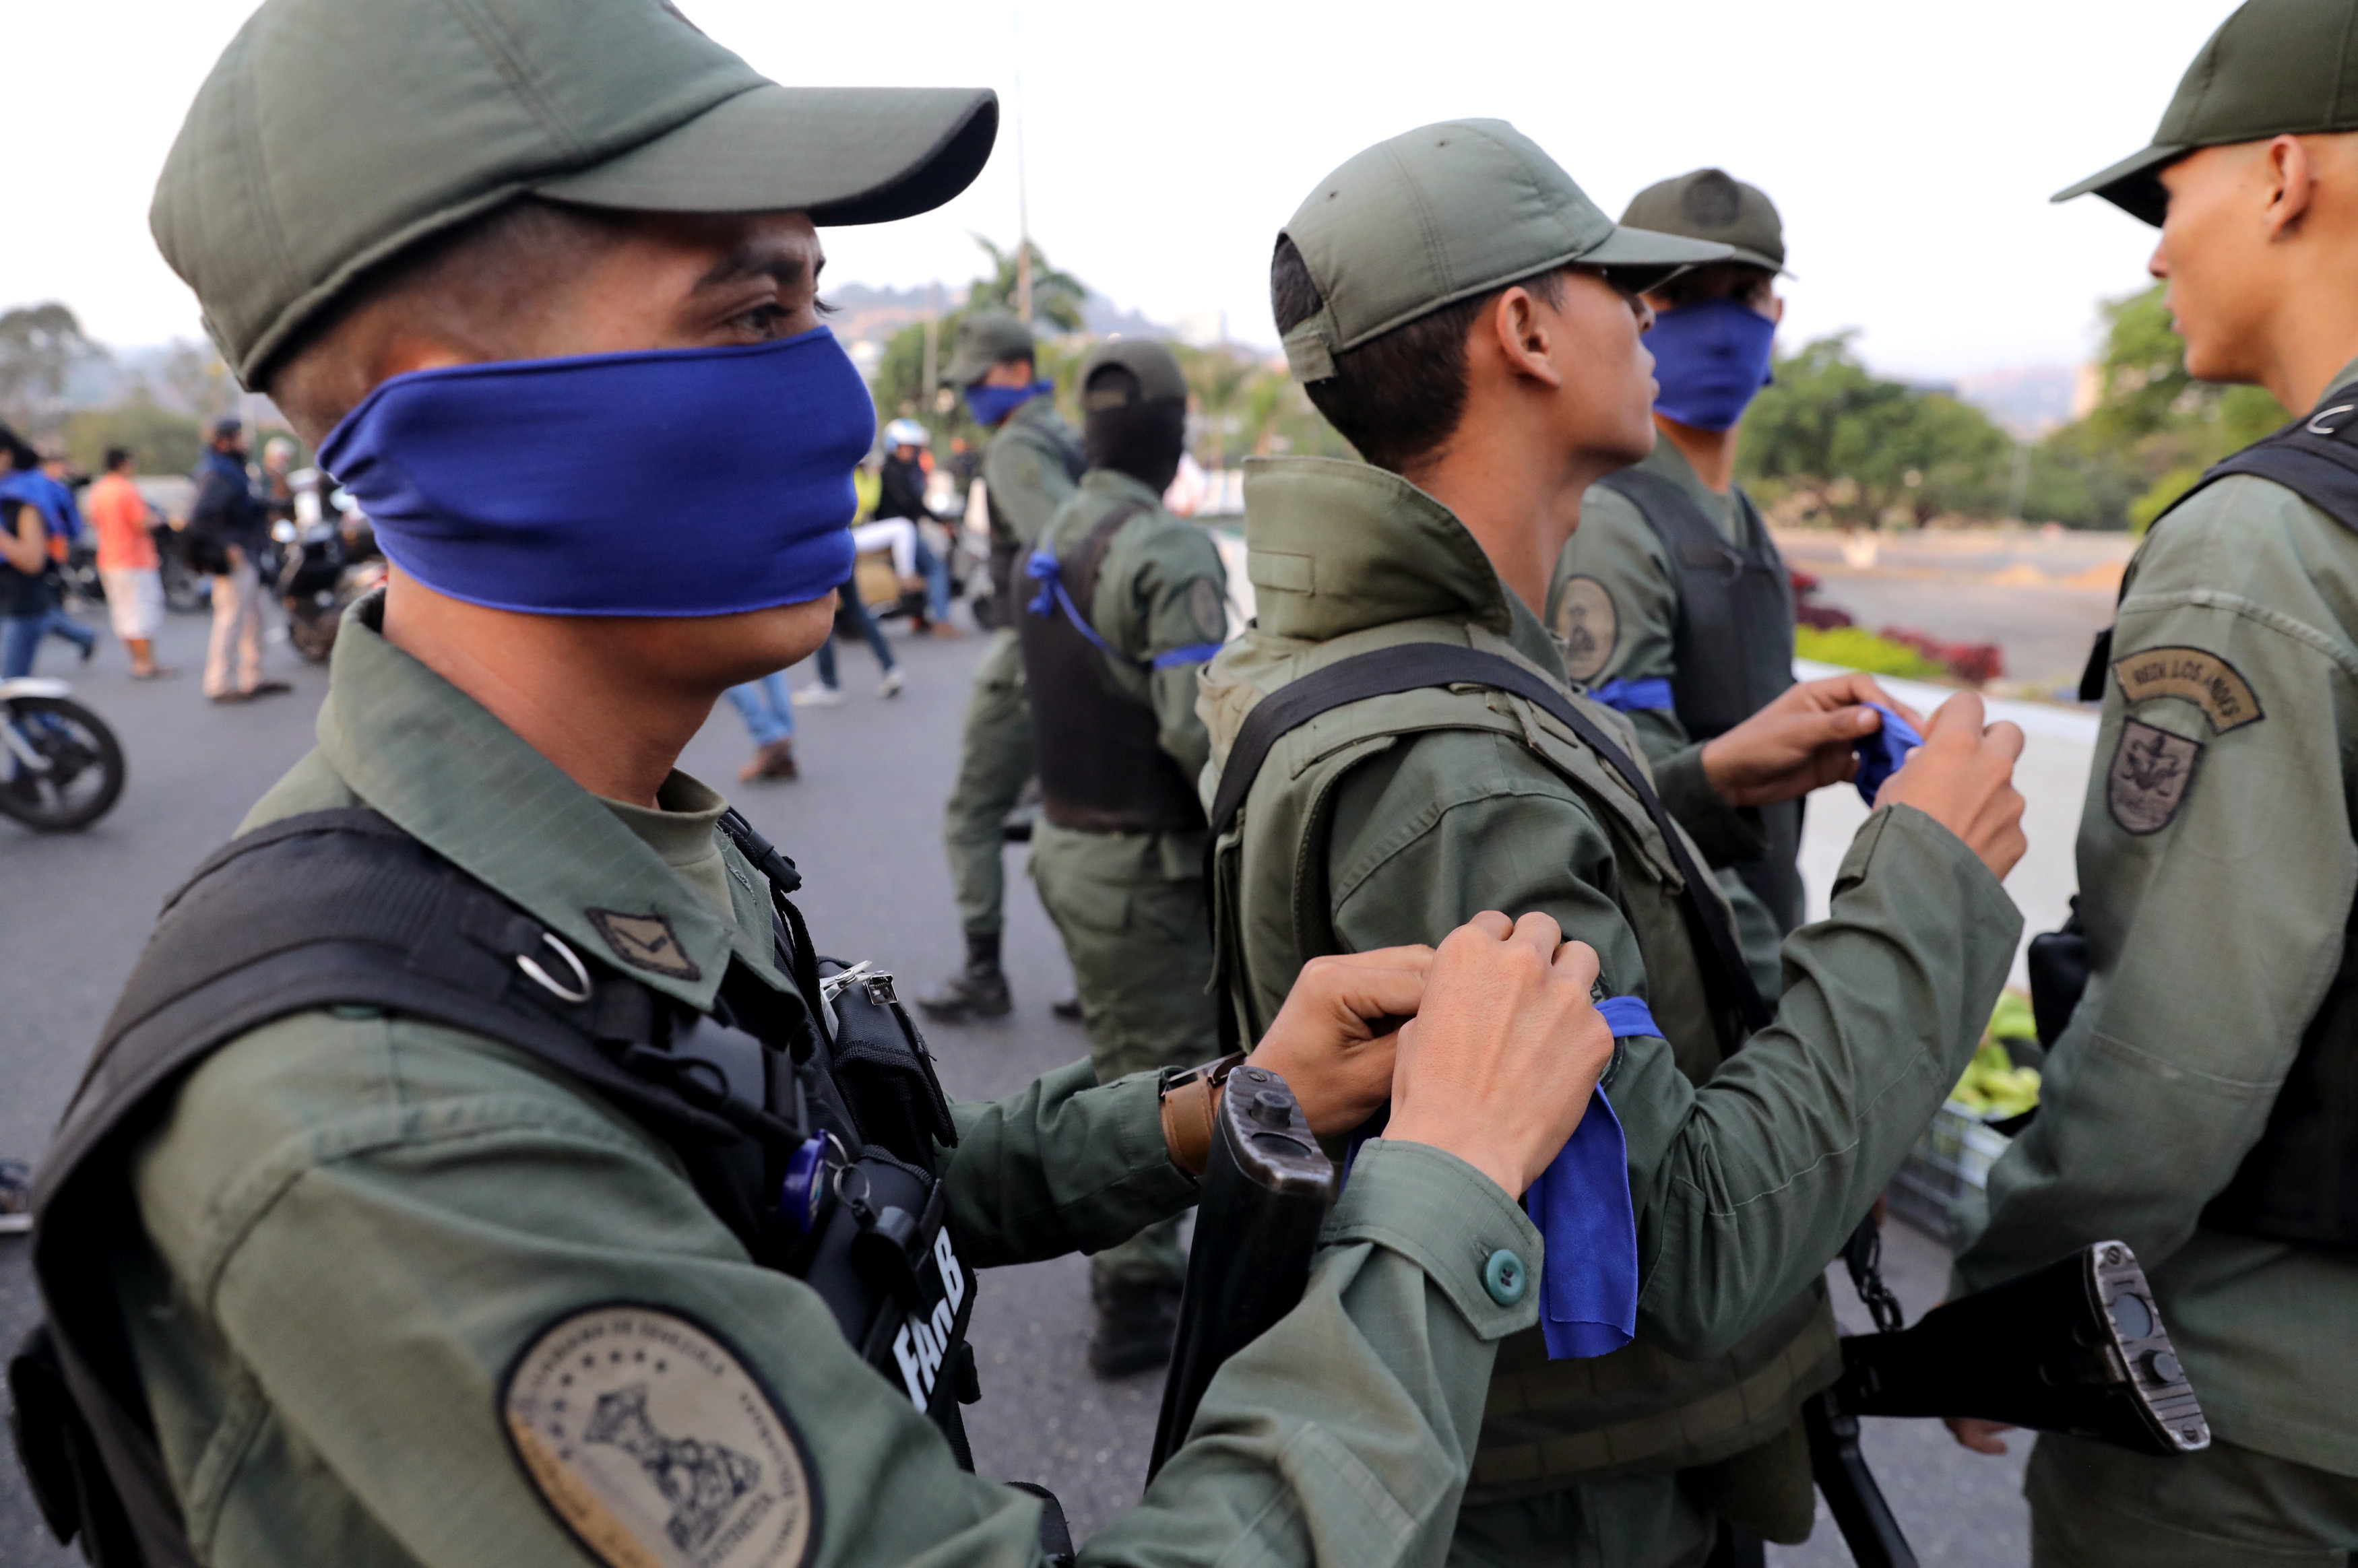 La OEA apoya la adhesión del Ejército de Venezuela a Guaidó y la Constitución